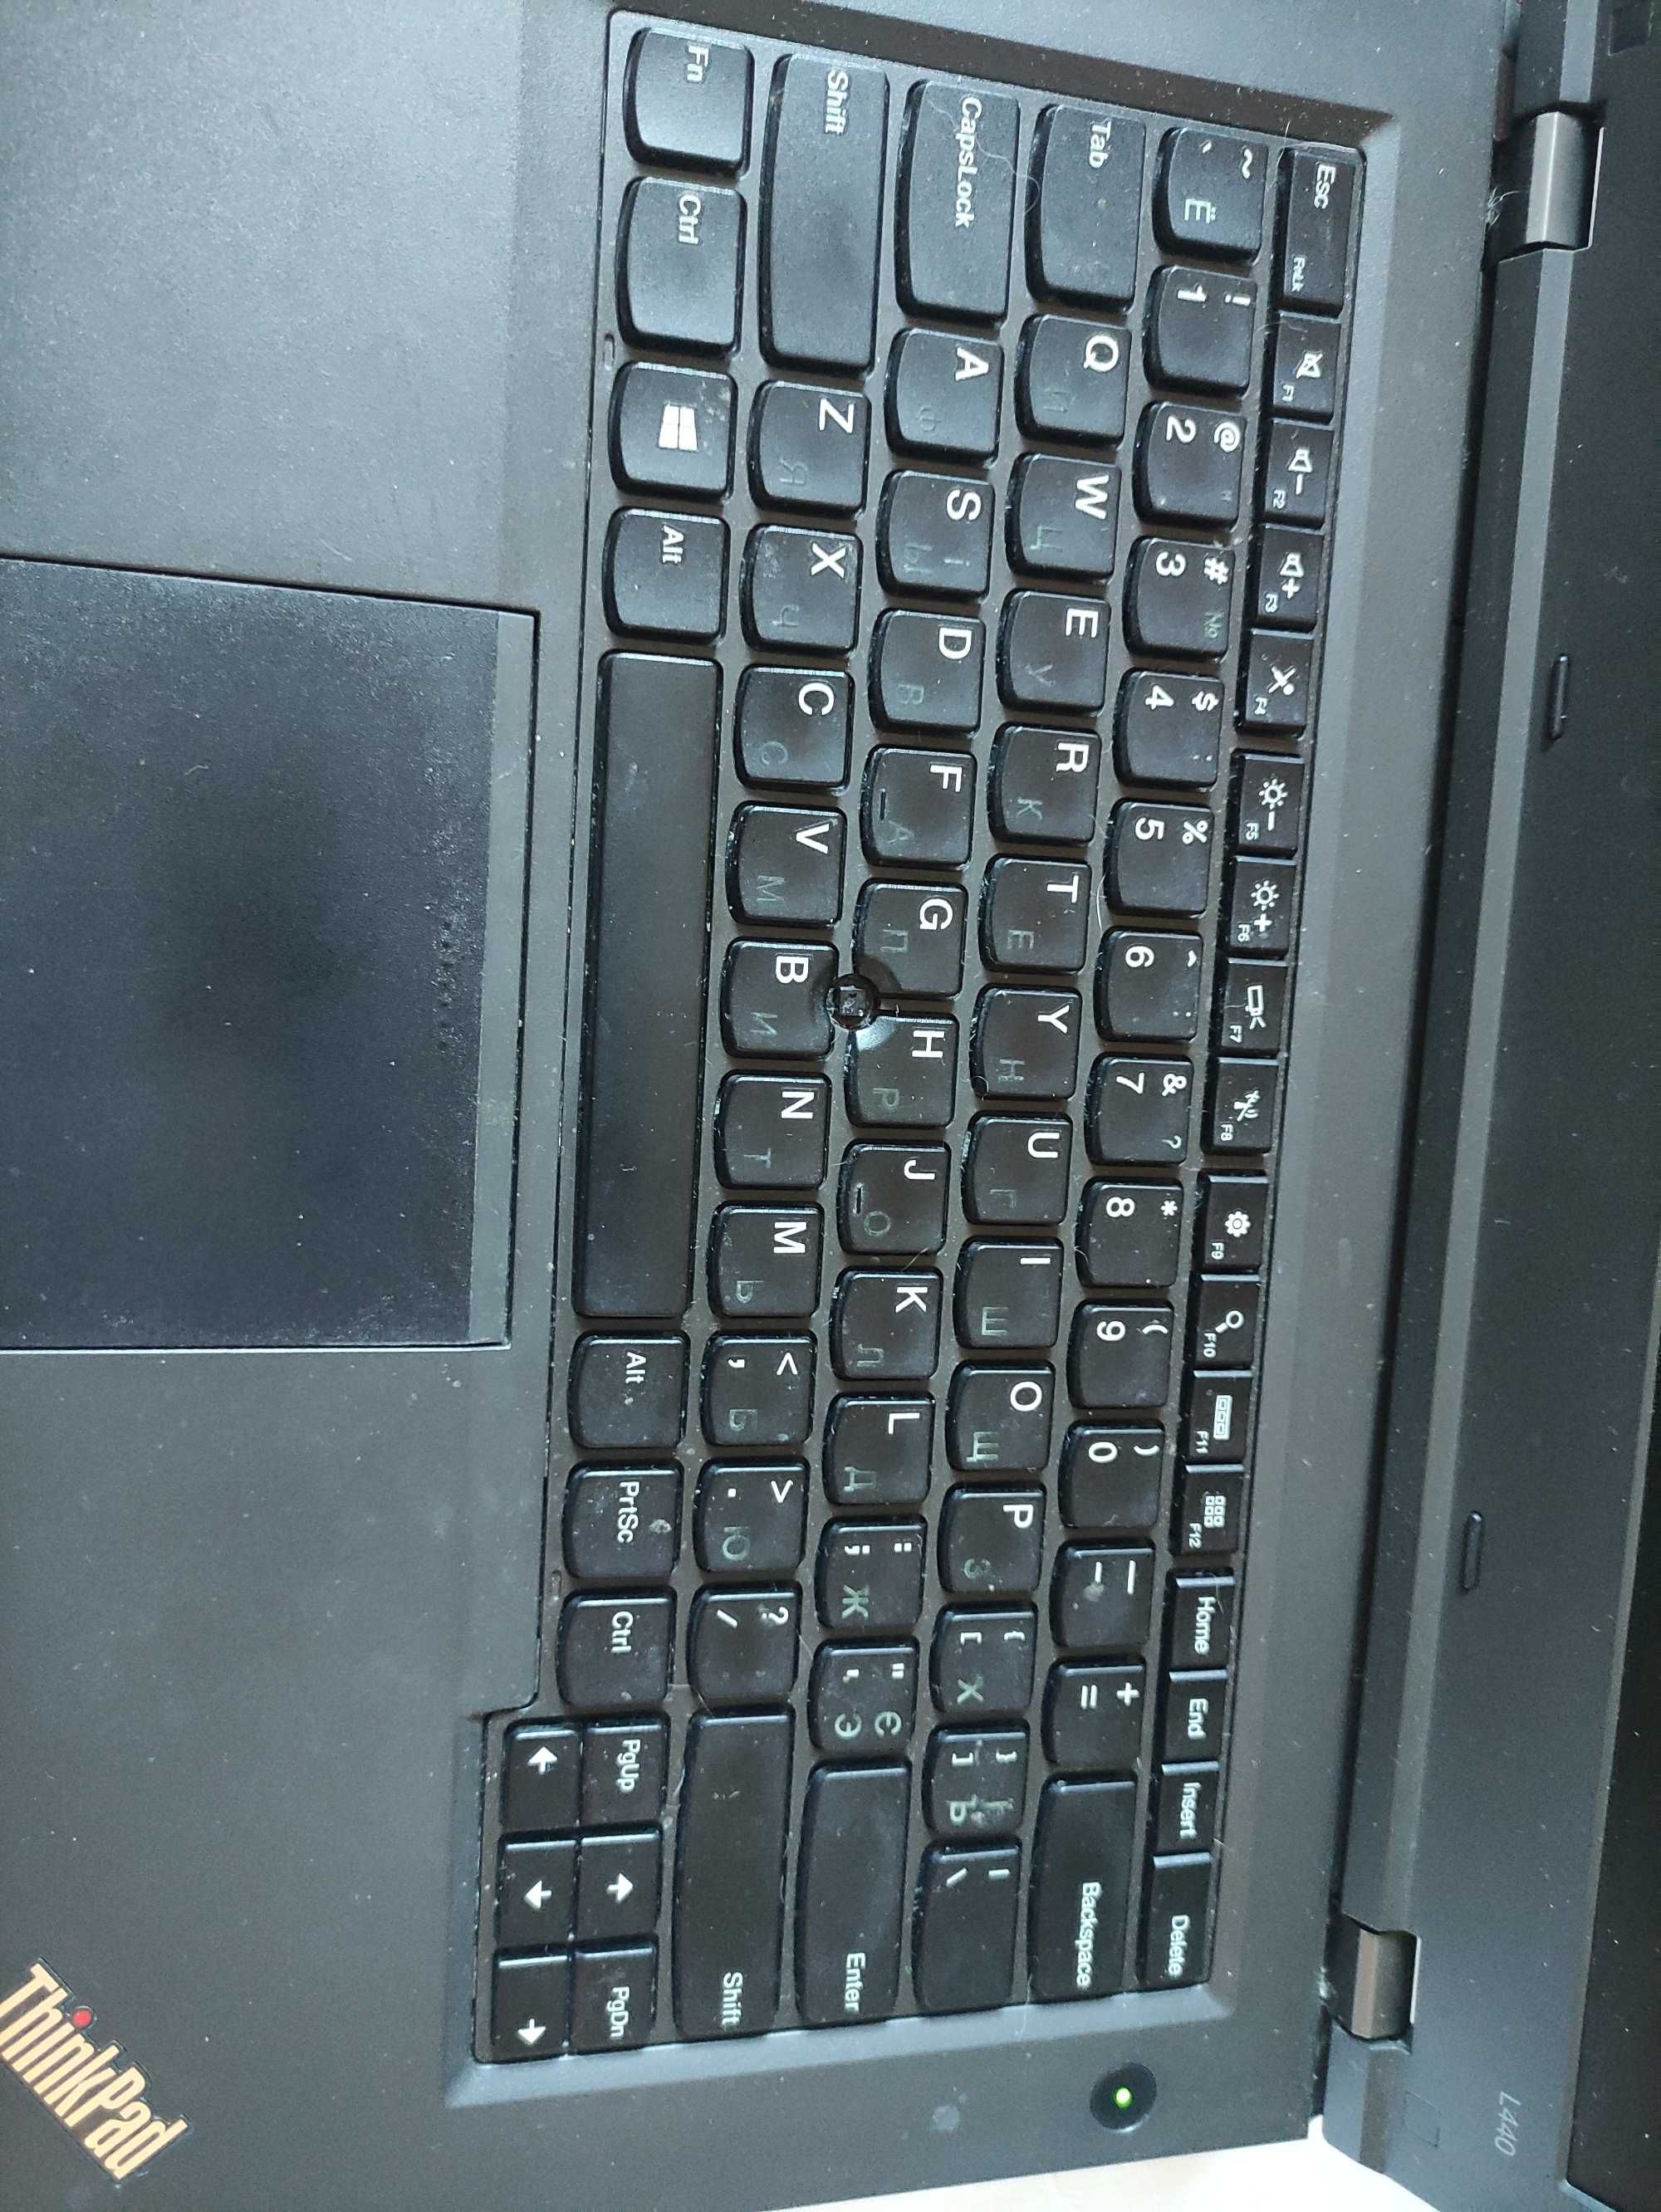 Ноутбук Lenovo Thinkpad L440 i5